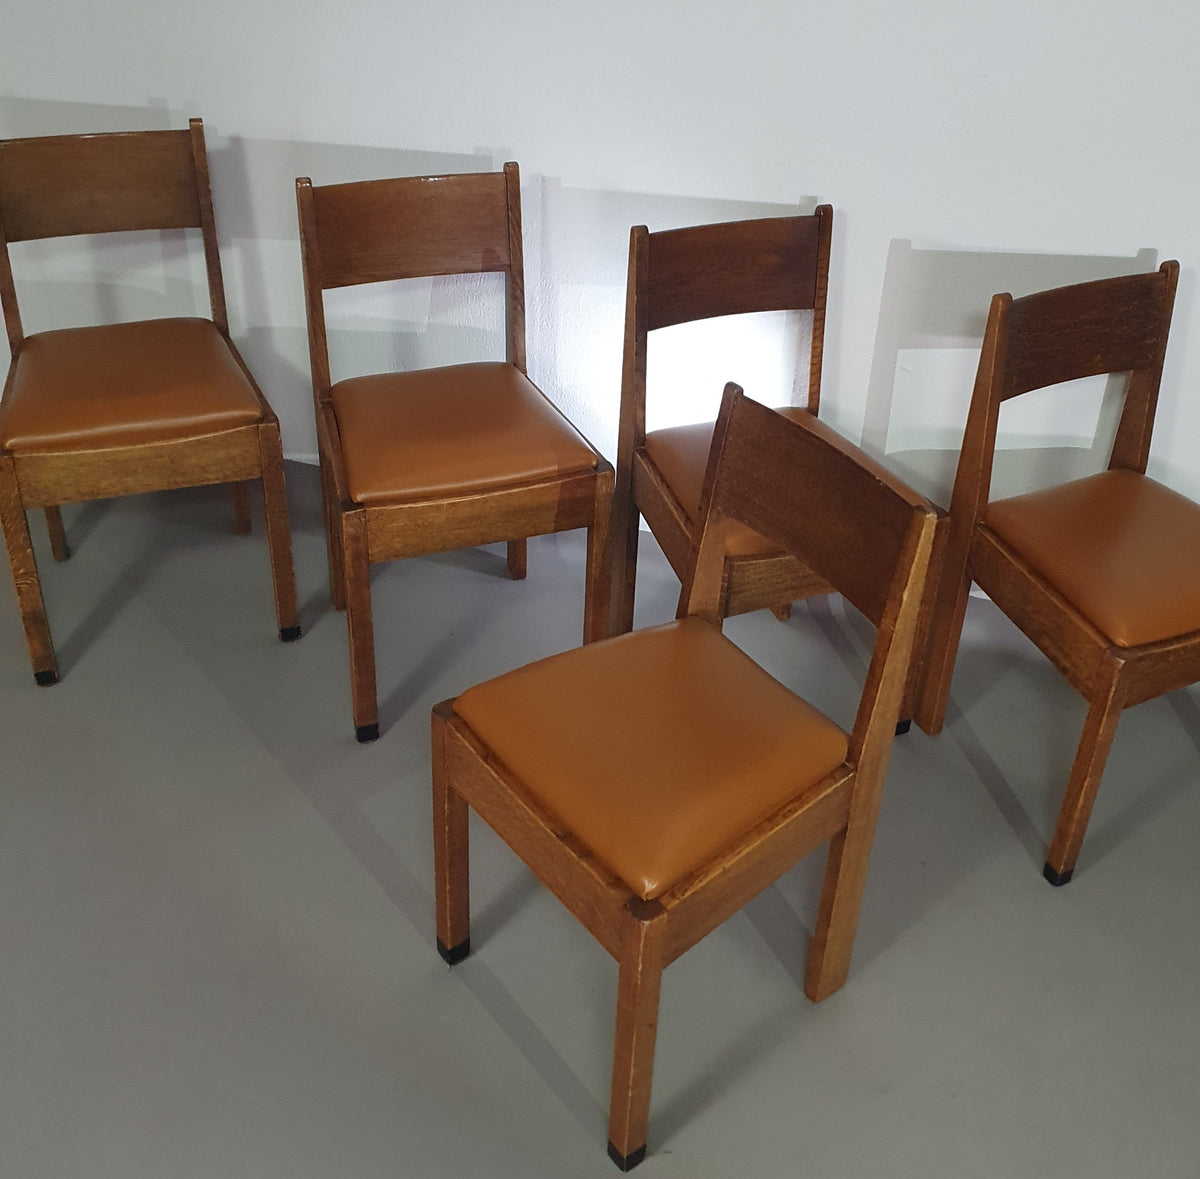 6 x Utrecht Mokkum chairs by Huizenga NV
Marked